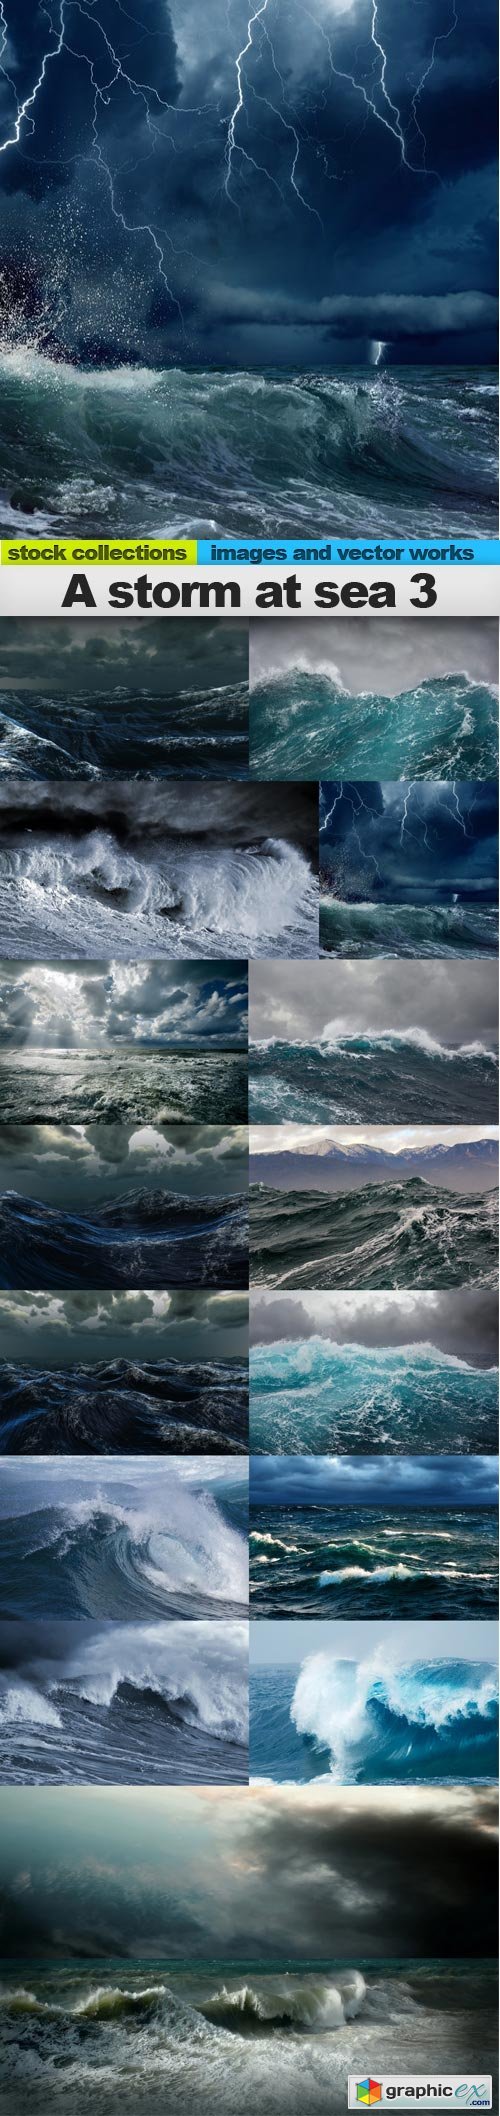 A storm at sea 3, 15 x UHQ JPEG